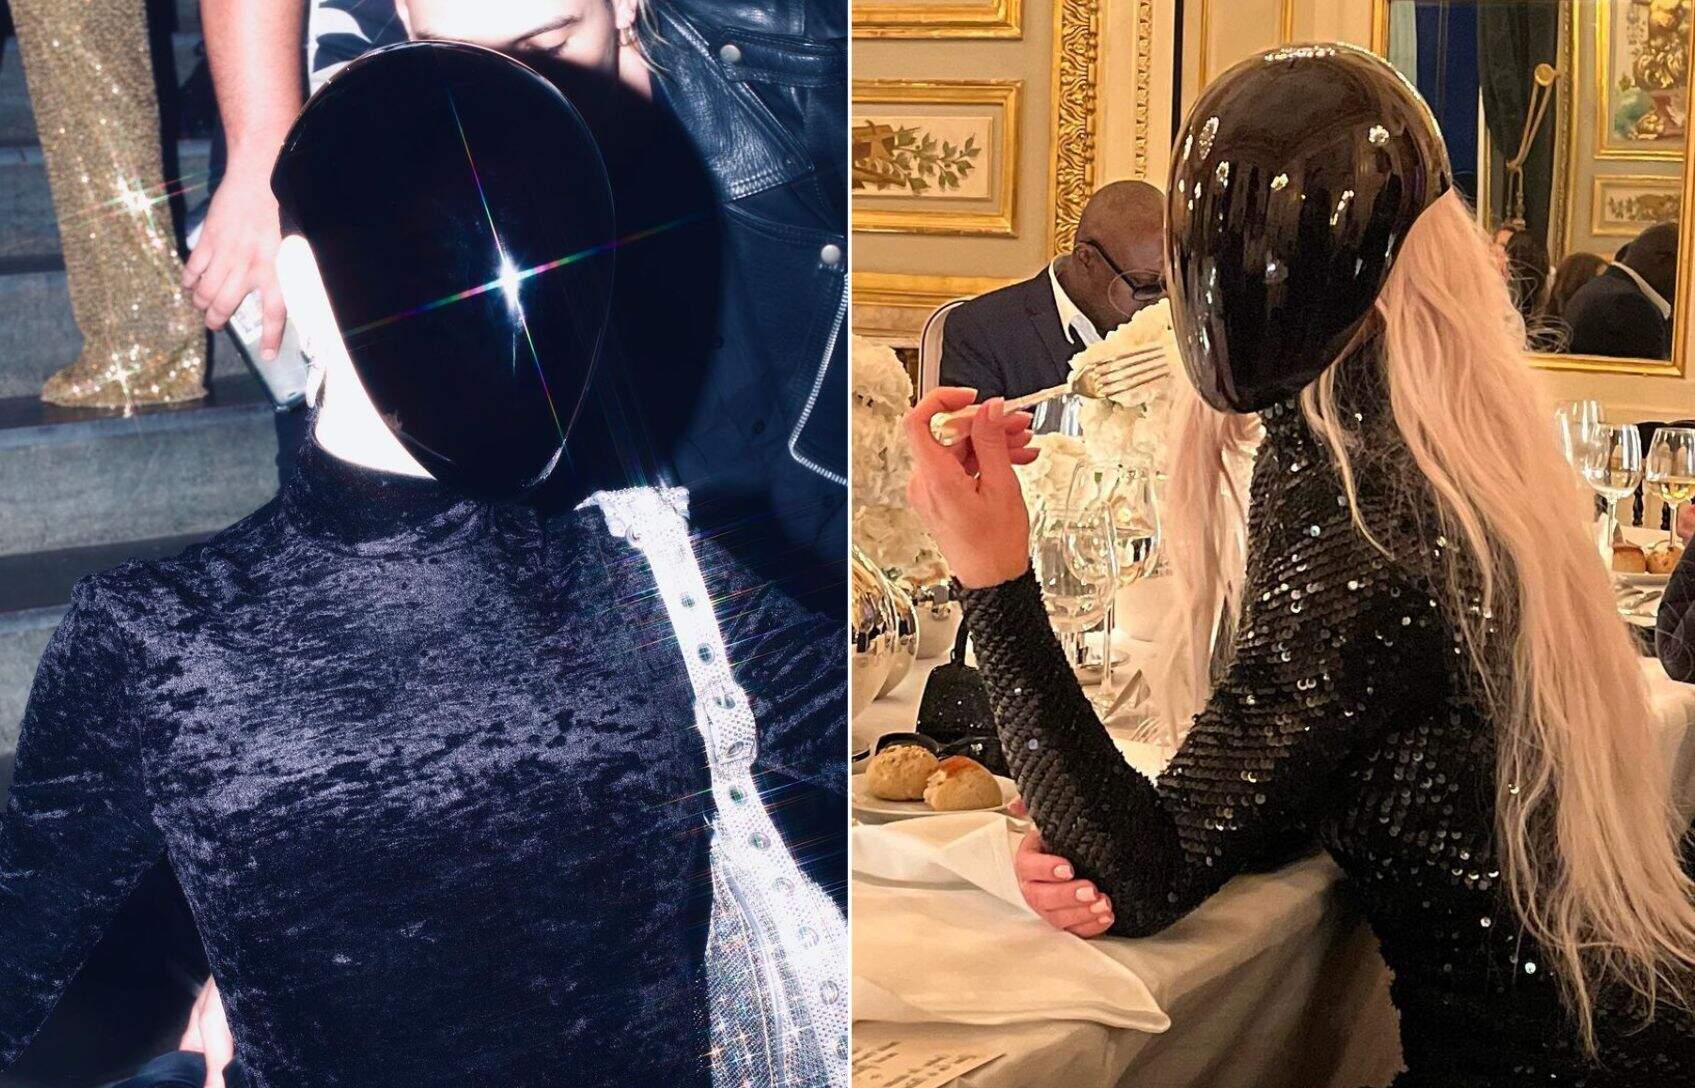 Gkay e Kim Kardashian usam mesma máscara